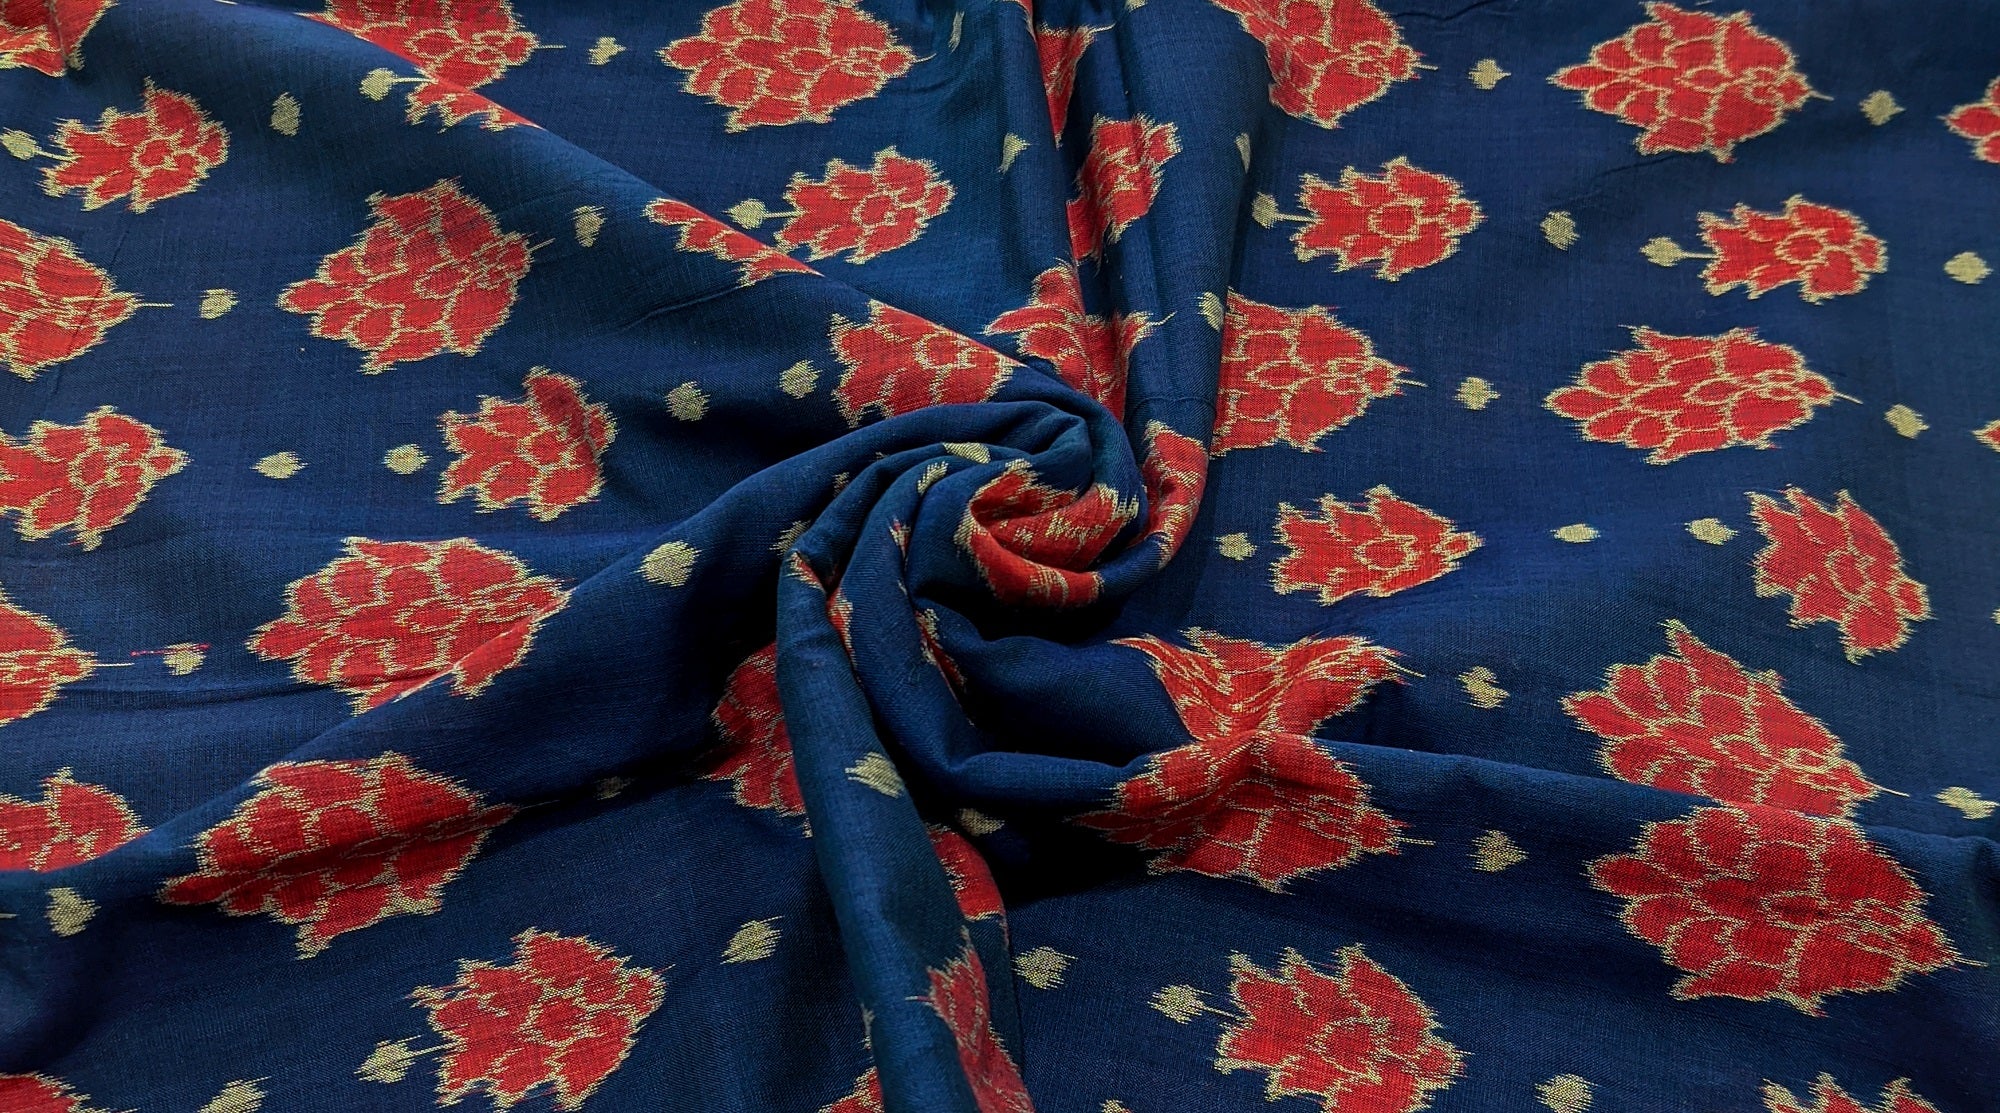 Pink Biba Mulmul Cotton Chikankari Angrakha - TheChikanLabel | Lucknow  Chikankari Kurtis & Suits